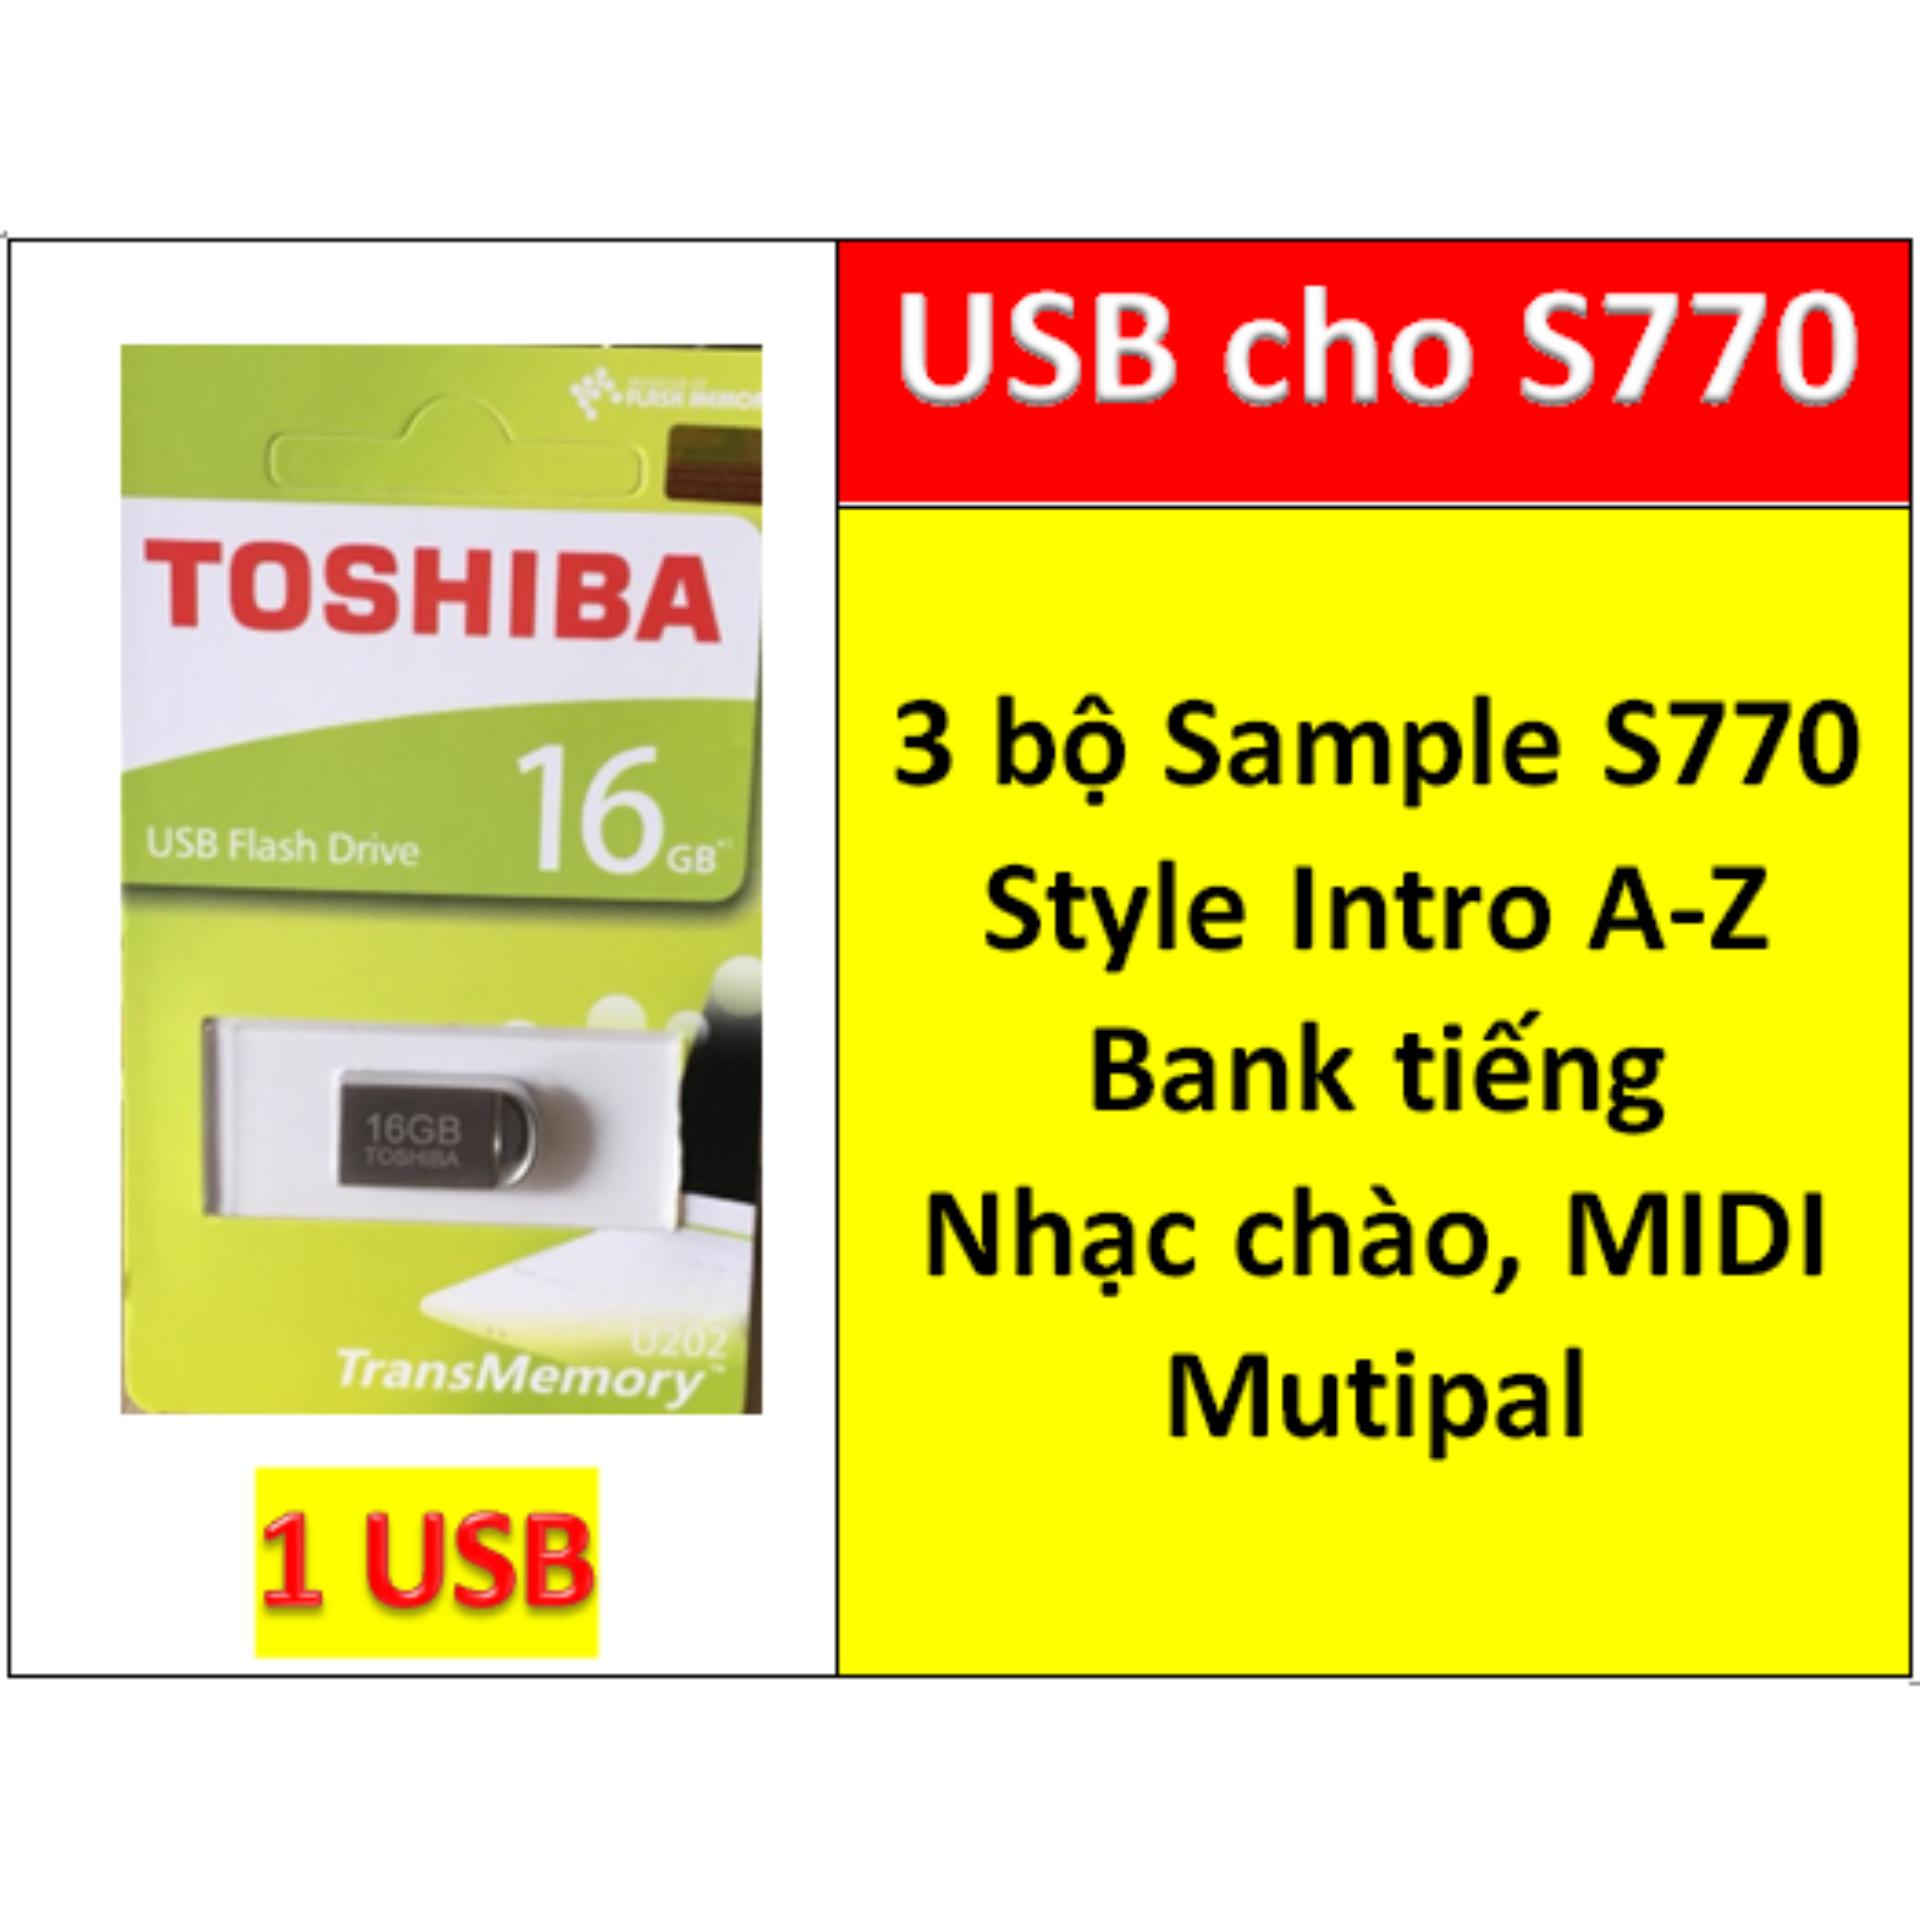 USB mini 3 BỘ Sample cho đàn organ yamaha PSR S770 Style nhạc chào songbook midi + Full dữ liệu làm show